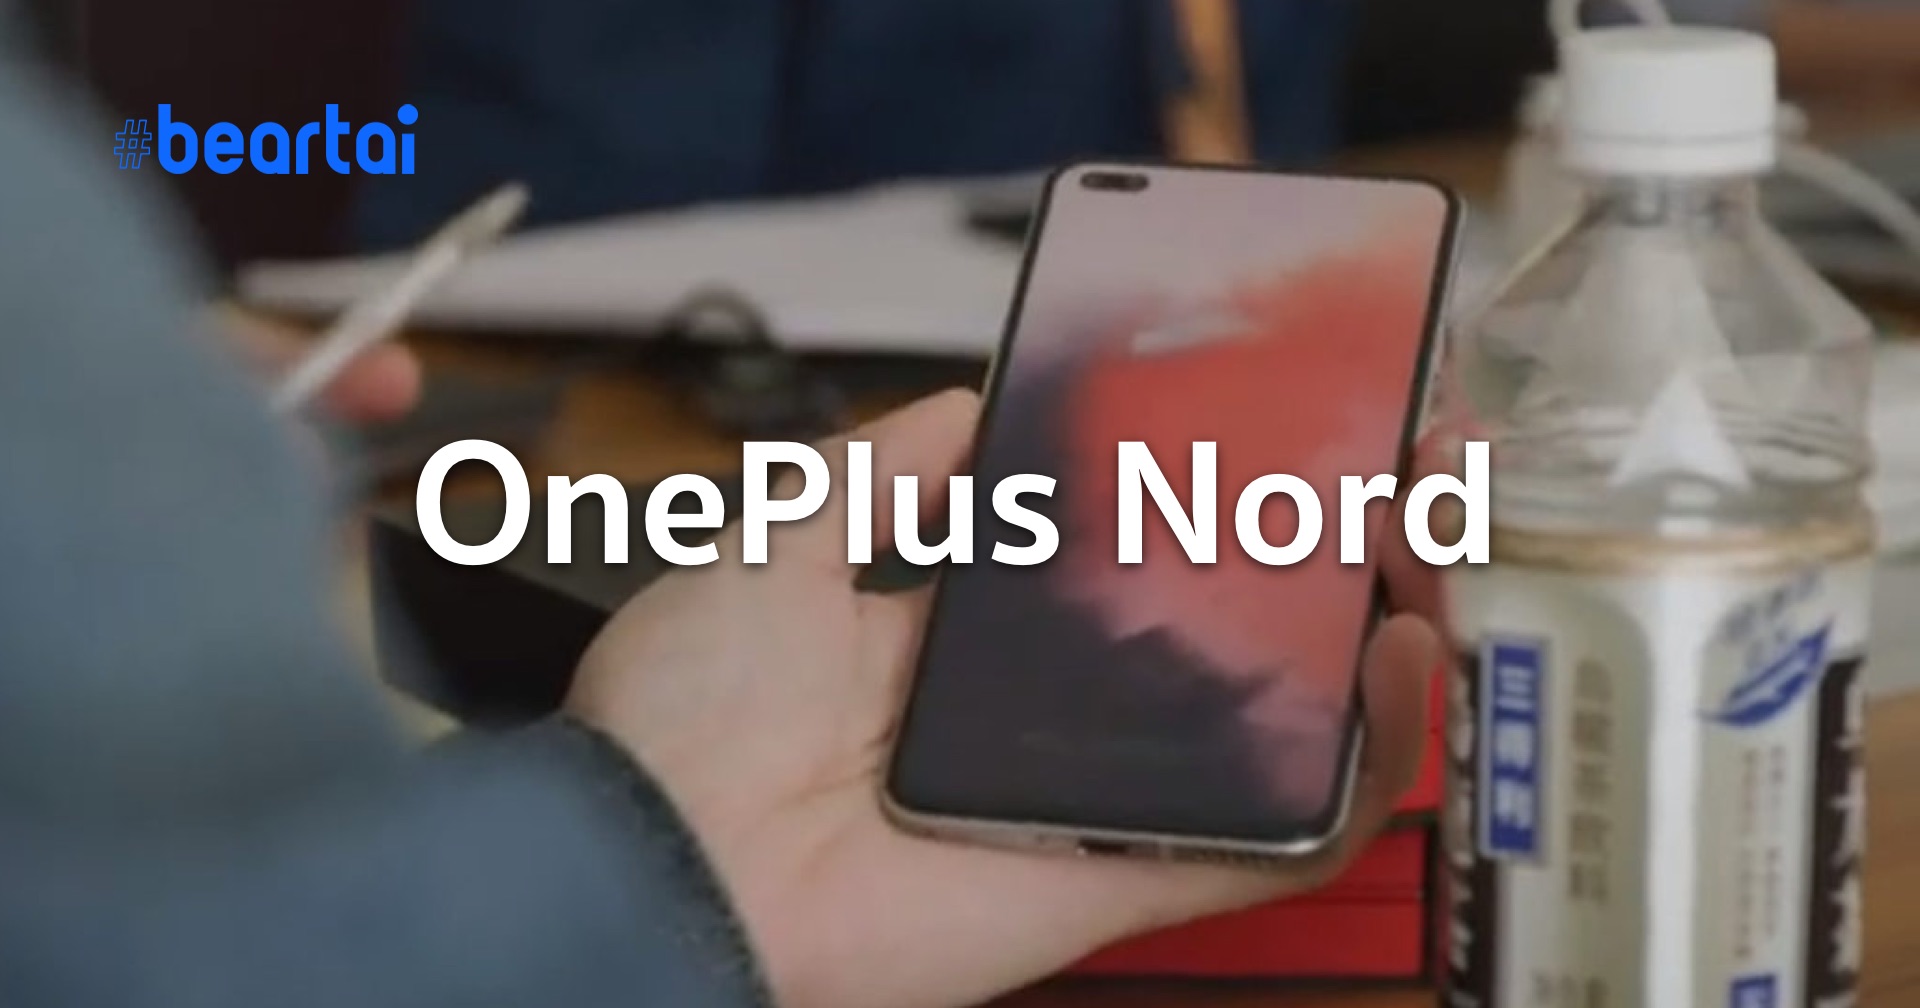 OnePlus ยืนยันเอง สมาร์ตโฟนราคาถูกรุ่นใหม่ใช้ชื่อ OnePlus Nord ราคาต่ำกว่า $500